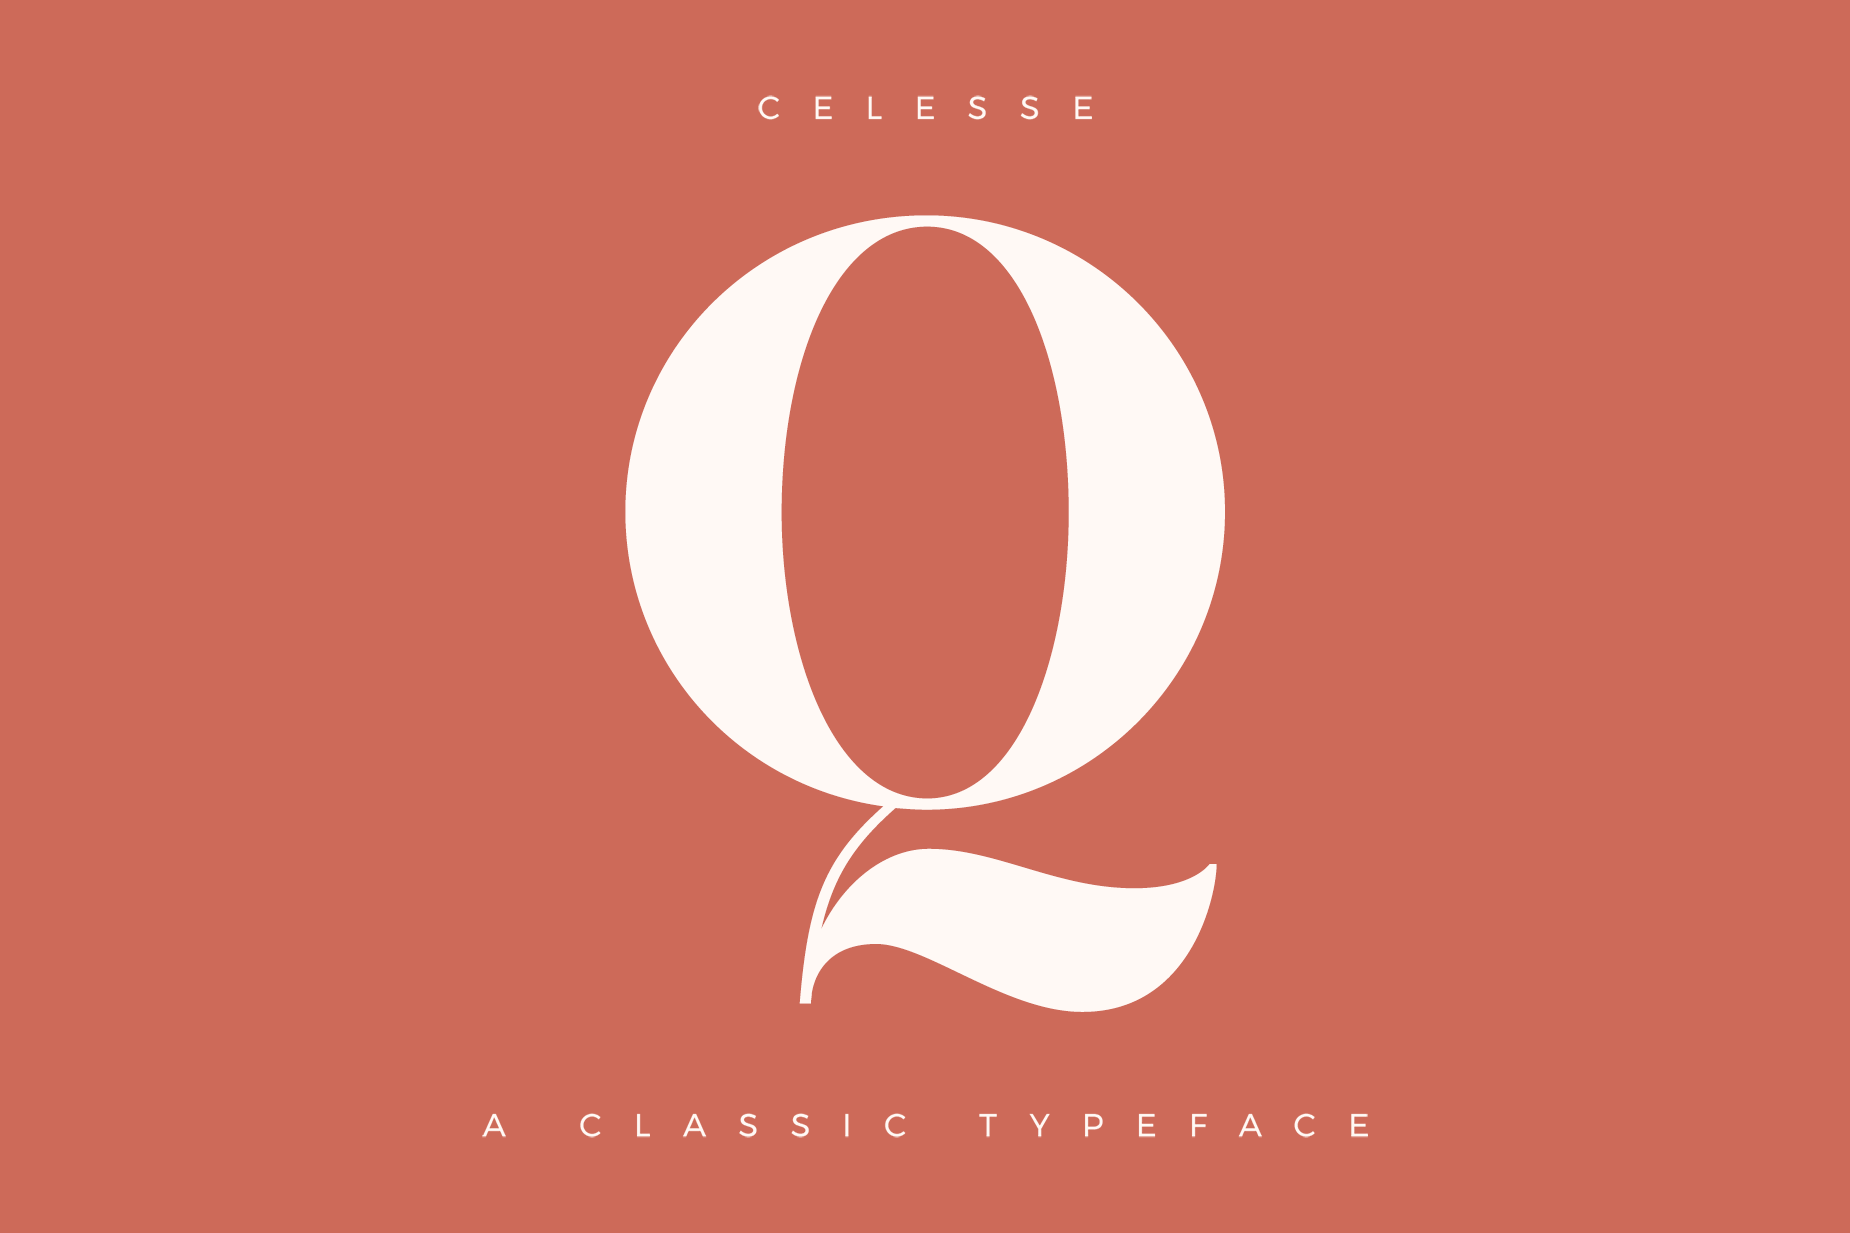 Thiết kế logo chữ Q đơn giản: Hãy khám phá bộ sưu tập thiết kế logo chữ Q đầy sáng tạo và độc đáo tại đây. Với phong cách đơn giản nhưng tinh tế, logo chữ Q là lựa chọn hoàn hảo để đại diện cho thương hiệu của bạn. Xem ngay để lấy cảm hứng cho dự án của mình!